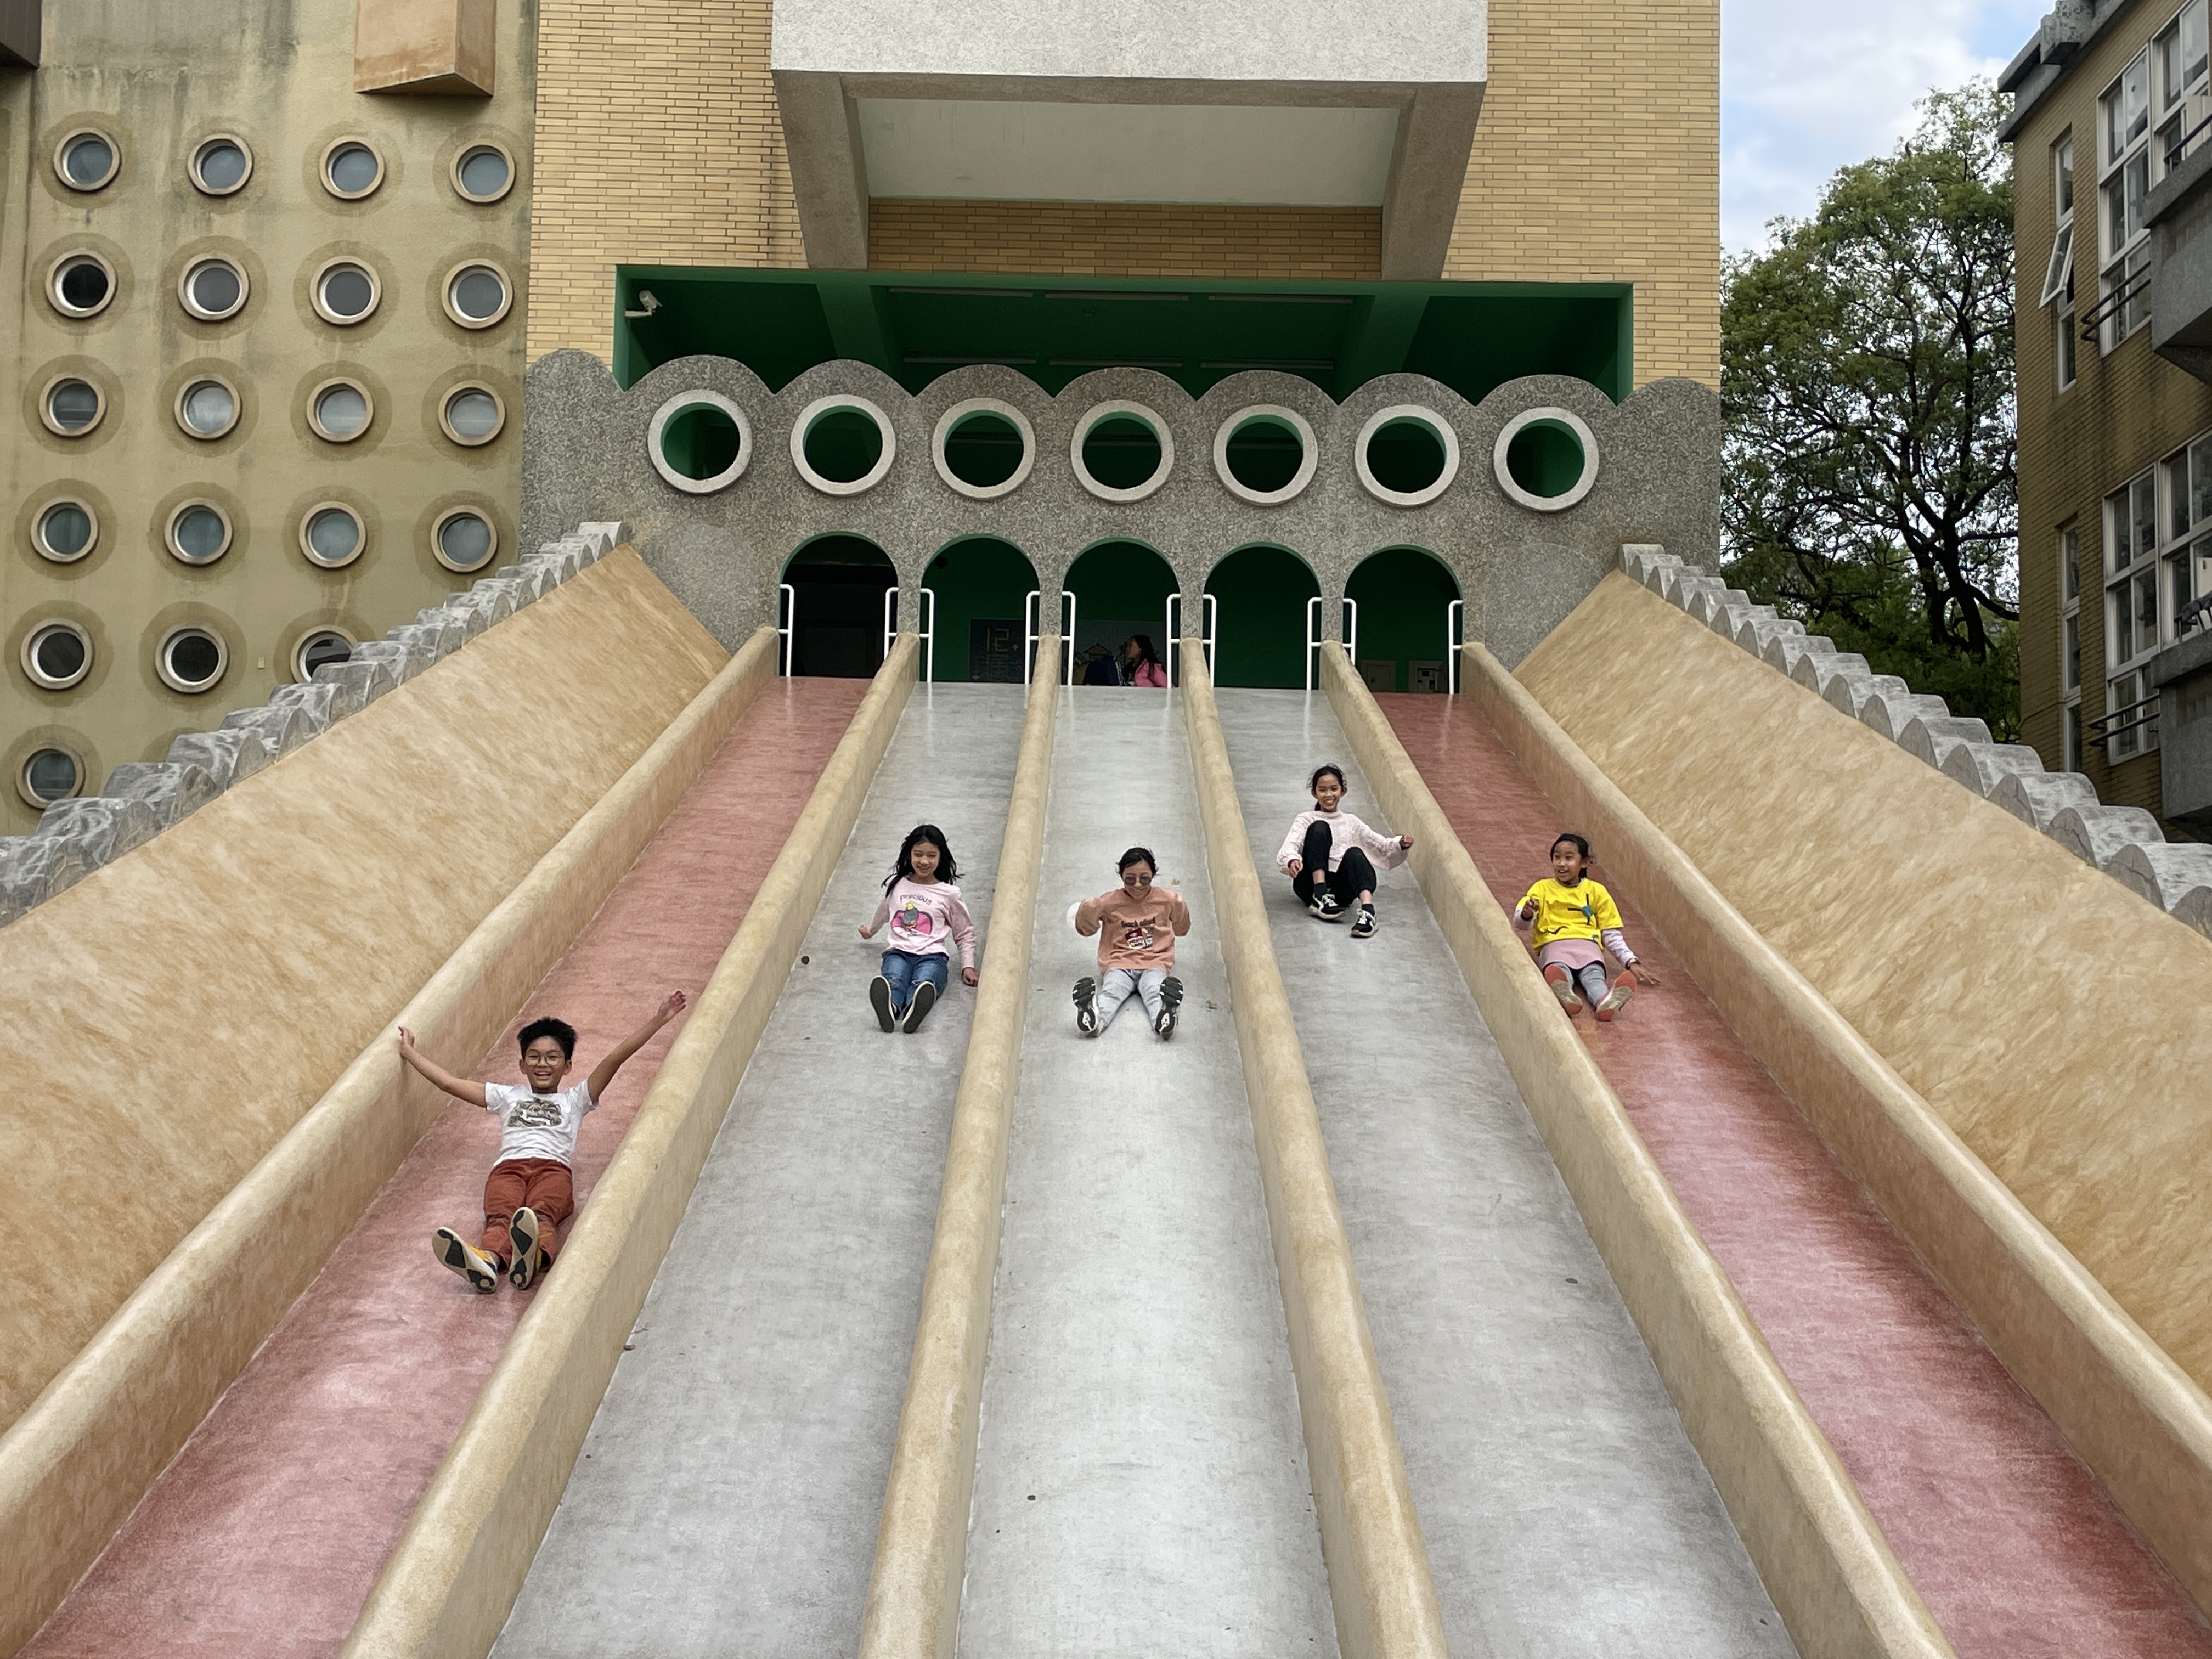 新竹市阳光国小校内有座2层楼高的特色巨型滑梯，因不符儿童游戏场安全规范去年封闭近1年，终于在今年初重启，7个滑道缩减为5个滑道。记者张裕珍／摄影